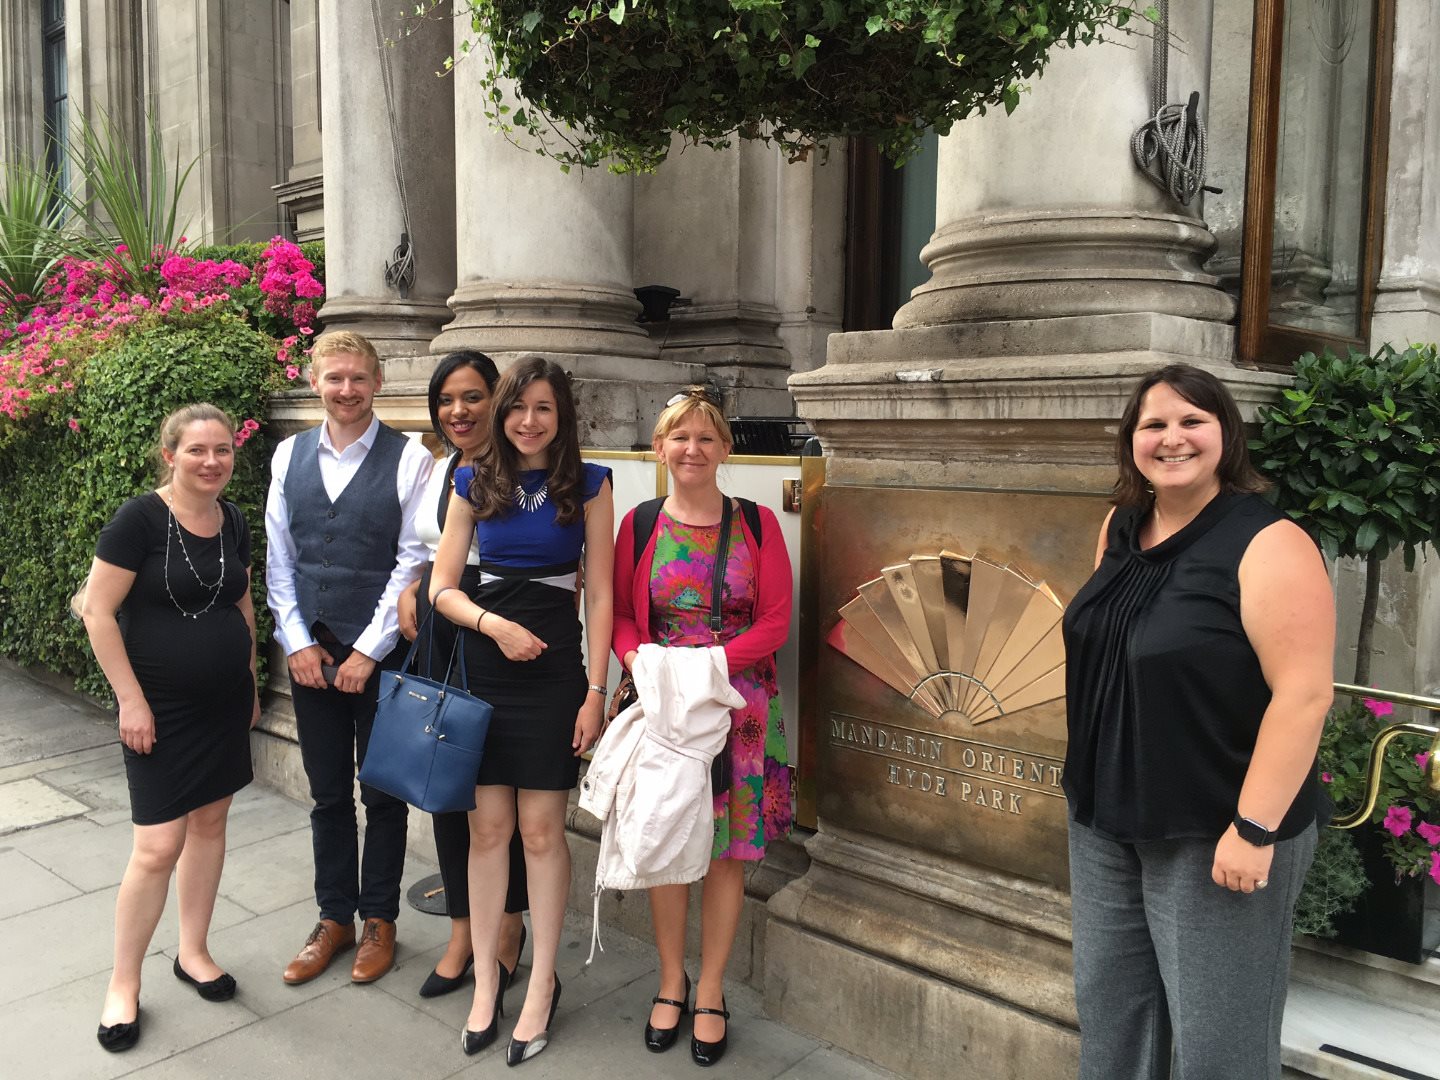 Winners outside the Mandarin Oriental Hotel in London